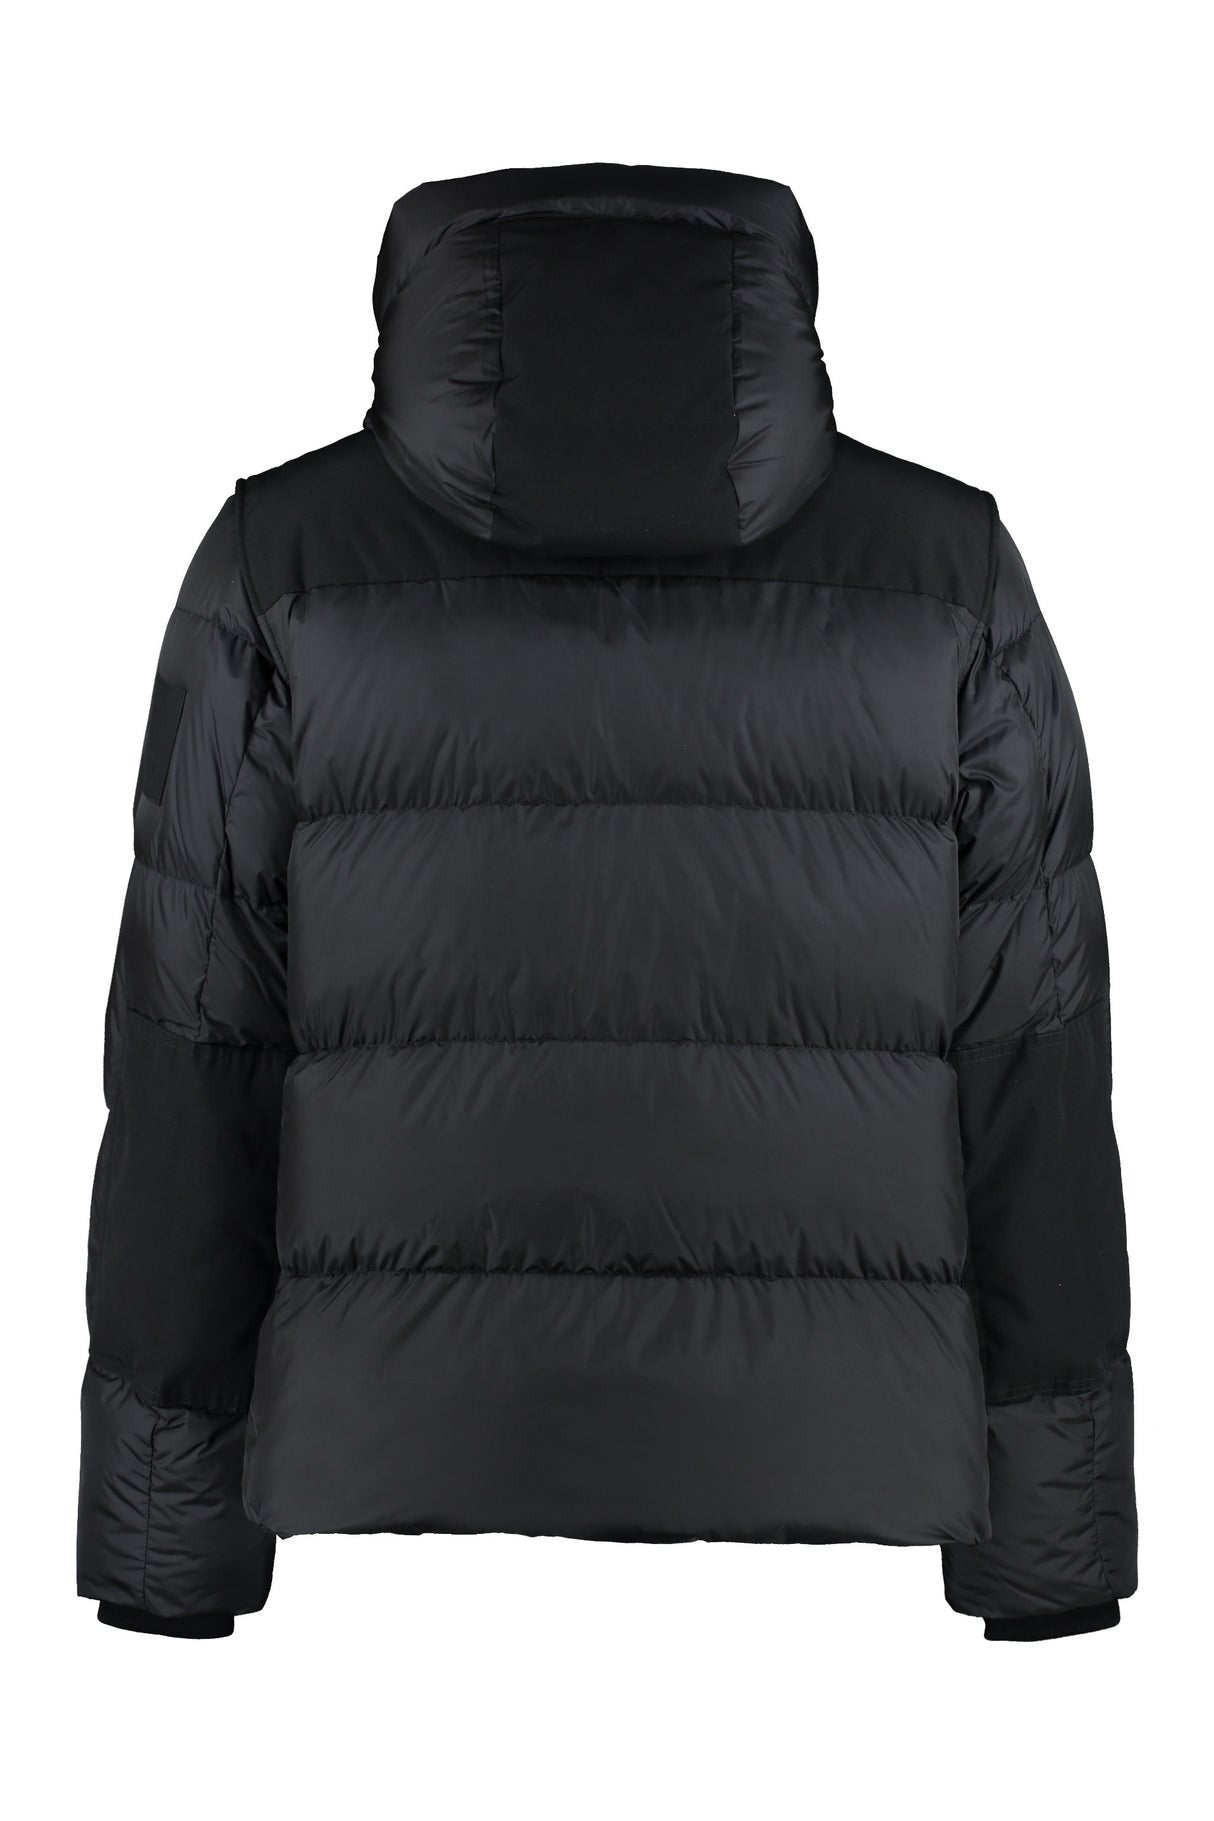 المعطف الأسود النايلون الرجالي FW23 بواسطة بربري